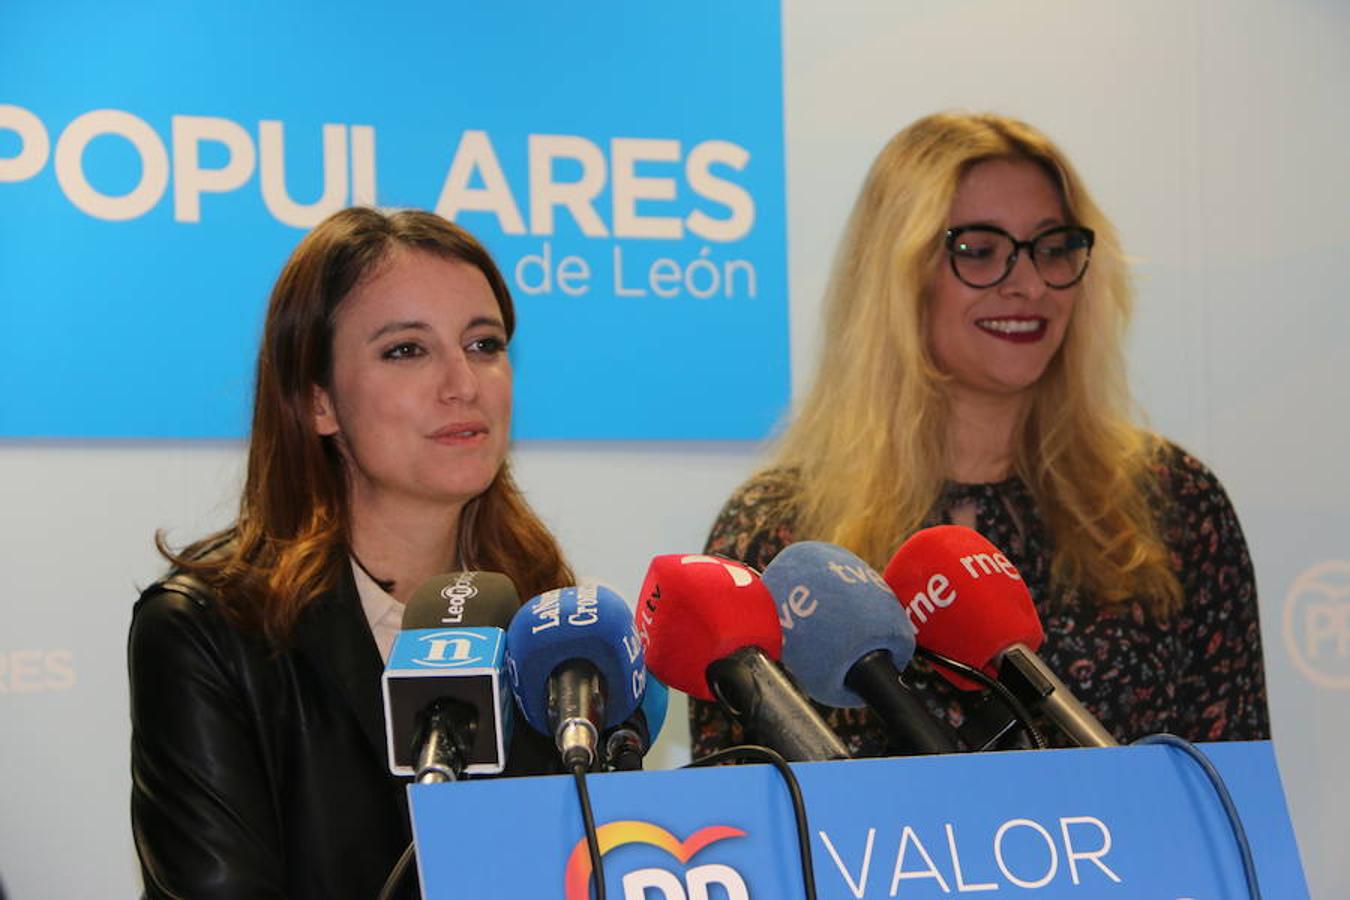 La vicesecretaria de Programas y Estudios del PP y candidata al Congreso por Madrid llega a León para reunirse con Jusapol, reclamando la equiparación de salarios entre Policías Nacionales y Guardias Civiles con la policía autonómica